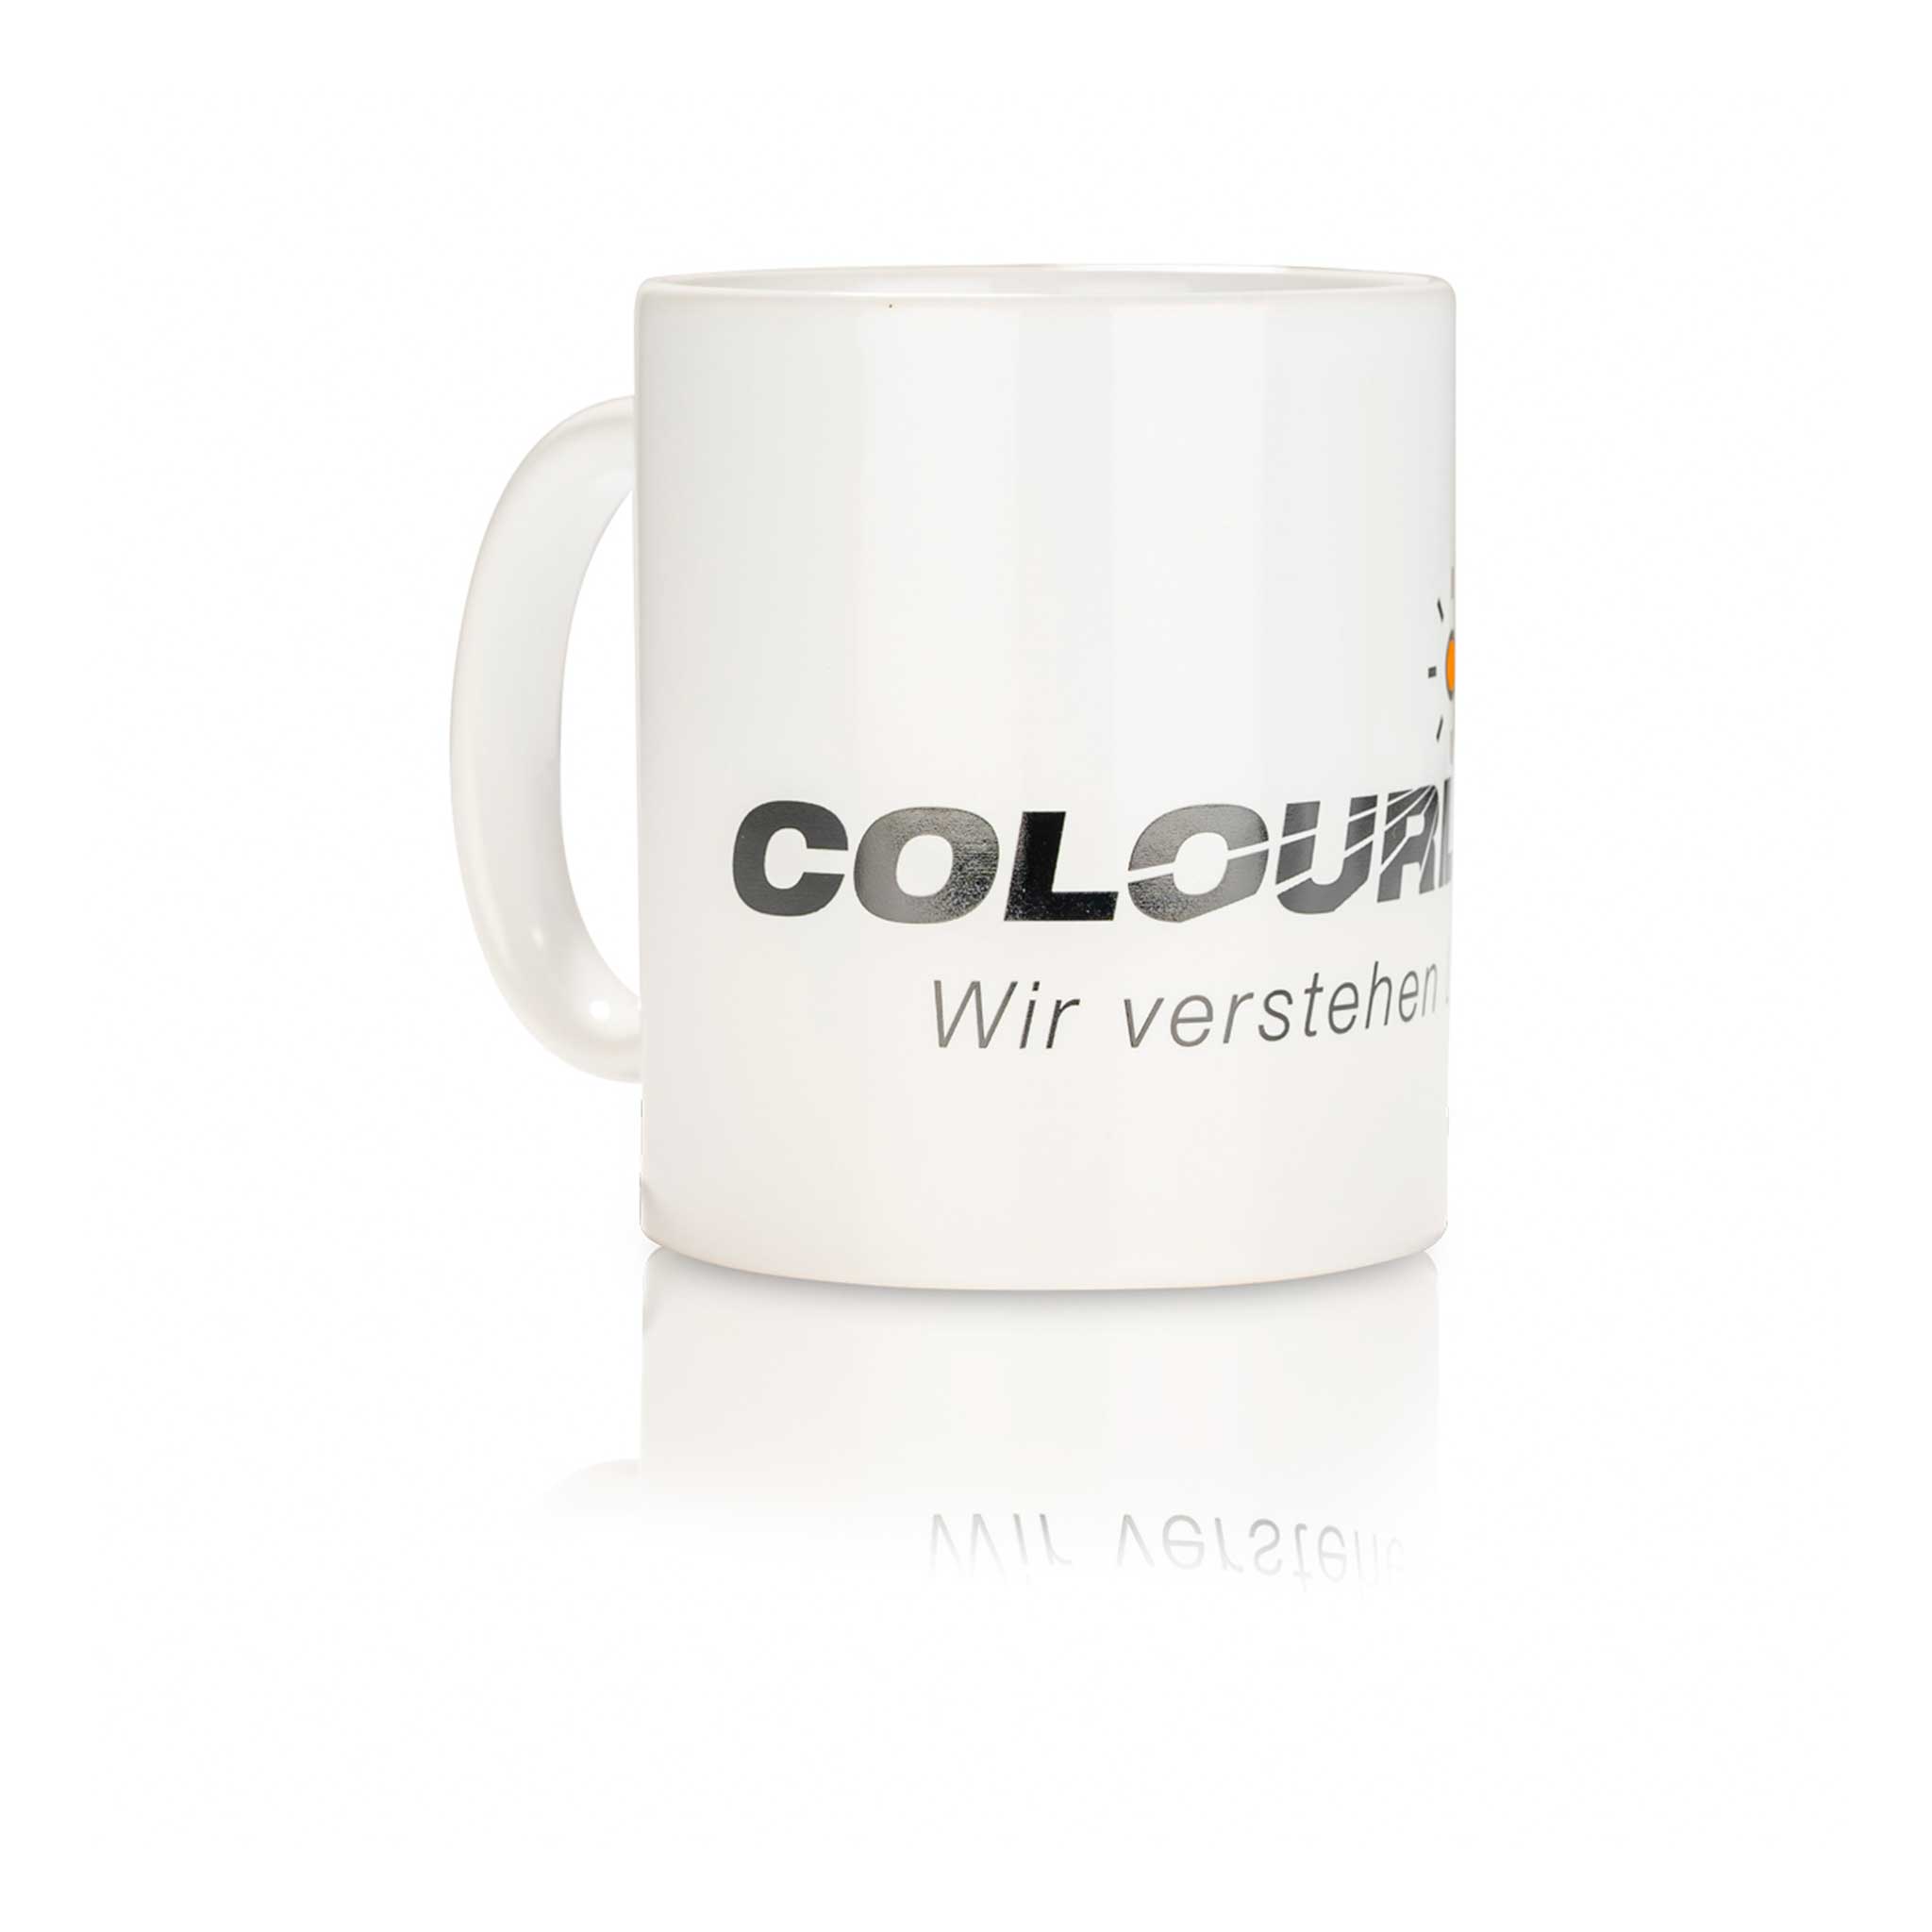 White mug with Colourlock logo